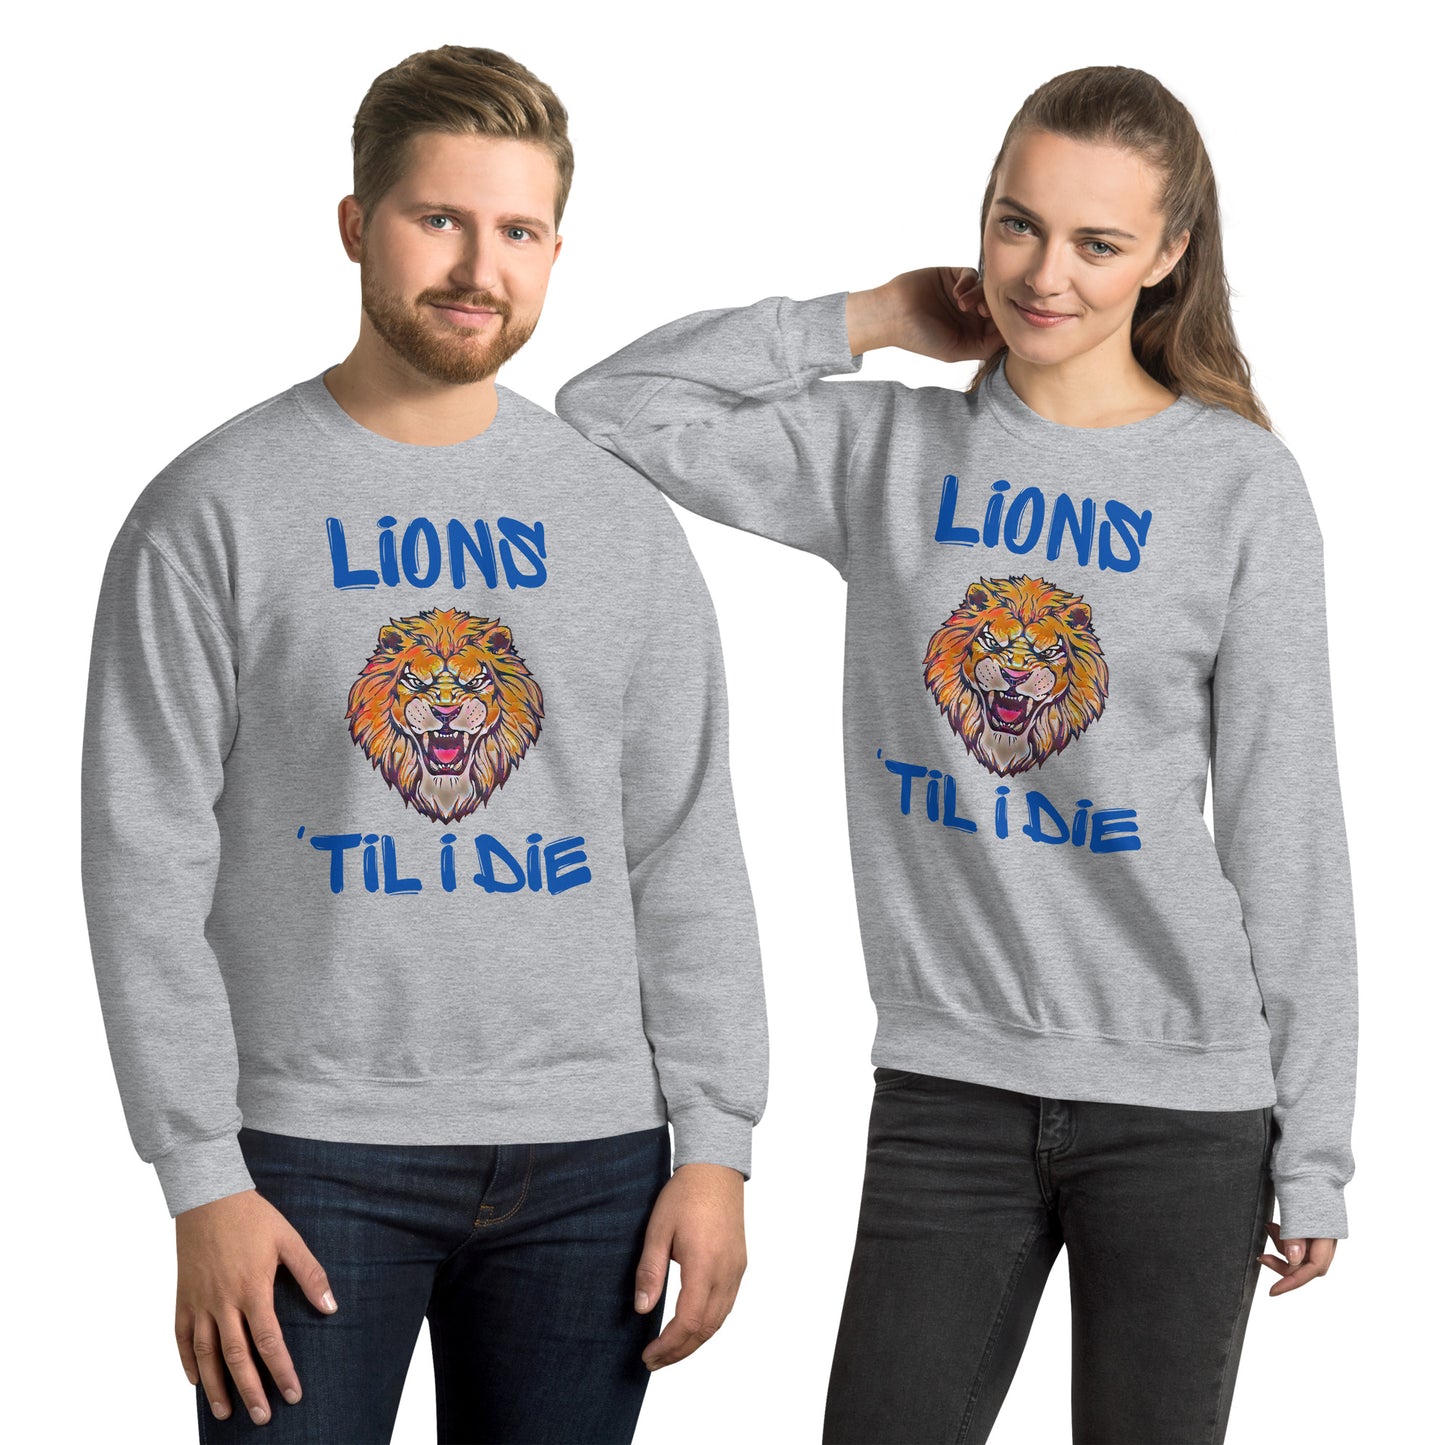 Lions 'Til I Die Sweatshirt